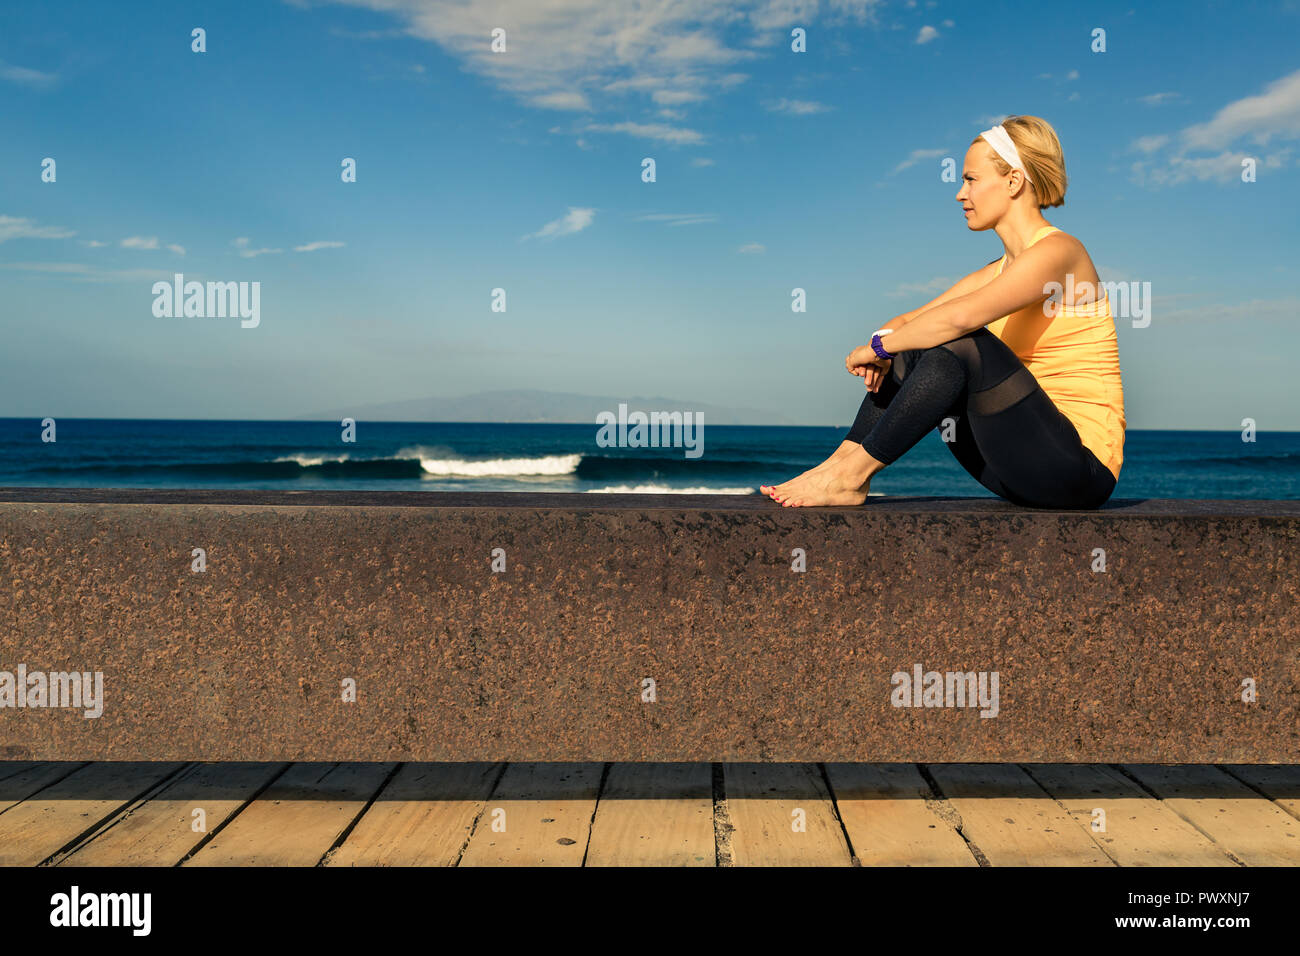 Frau meditieren yoga Pose, Blick aufs Meer, den Strand und die hölzernen Gehweg. Motivation und inspirierenden Sommer Meer Landschaft. Gesunder Lebensstil im Freien in Stockfoto